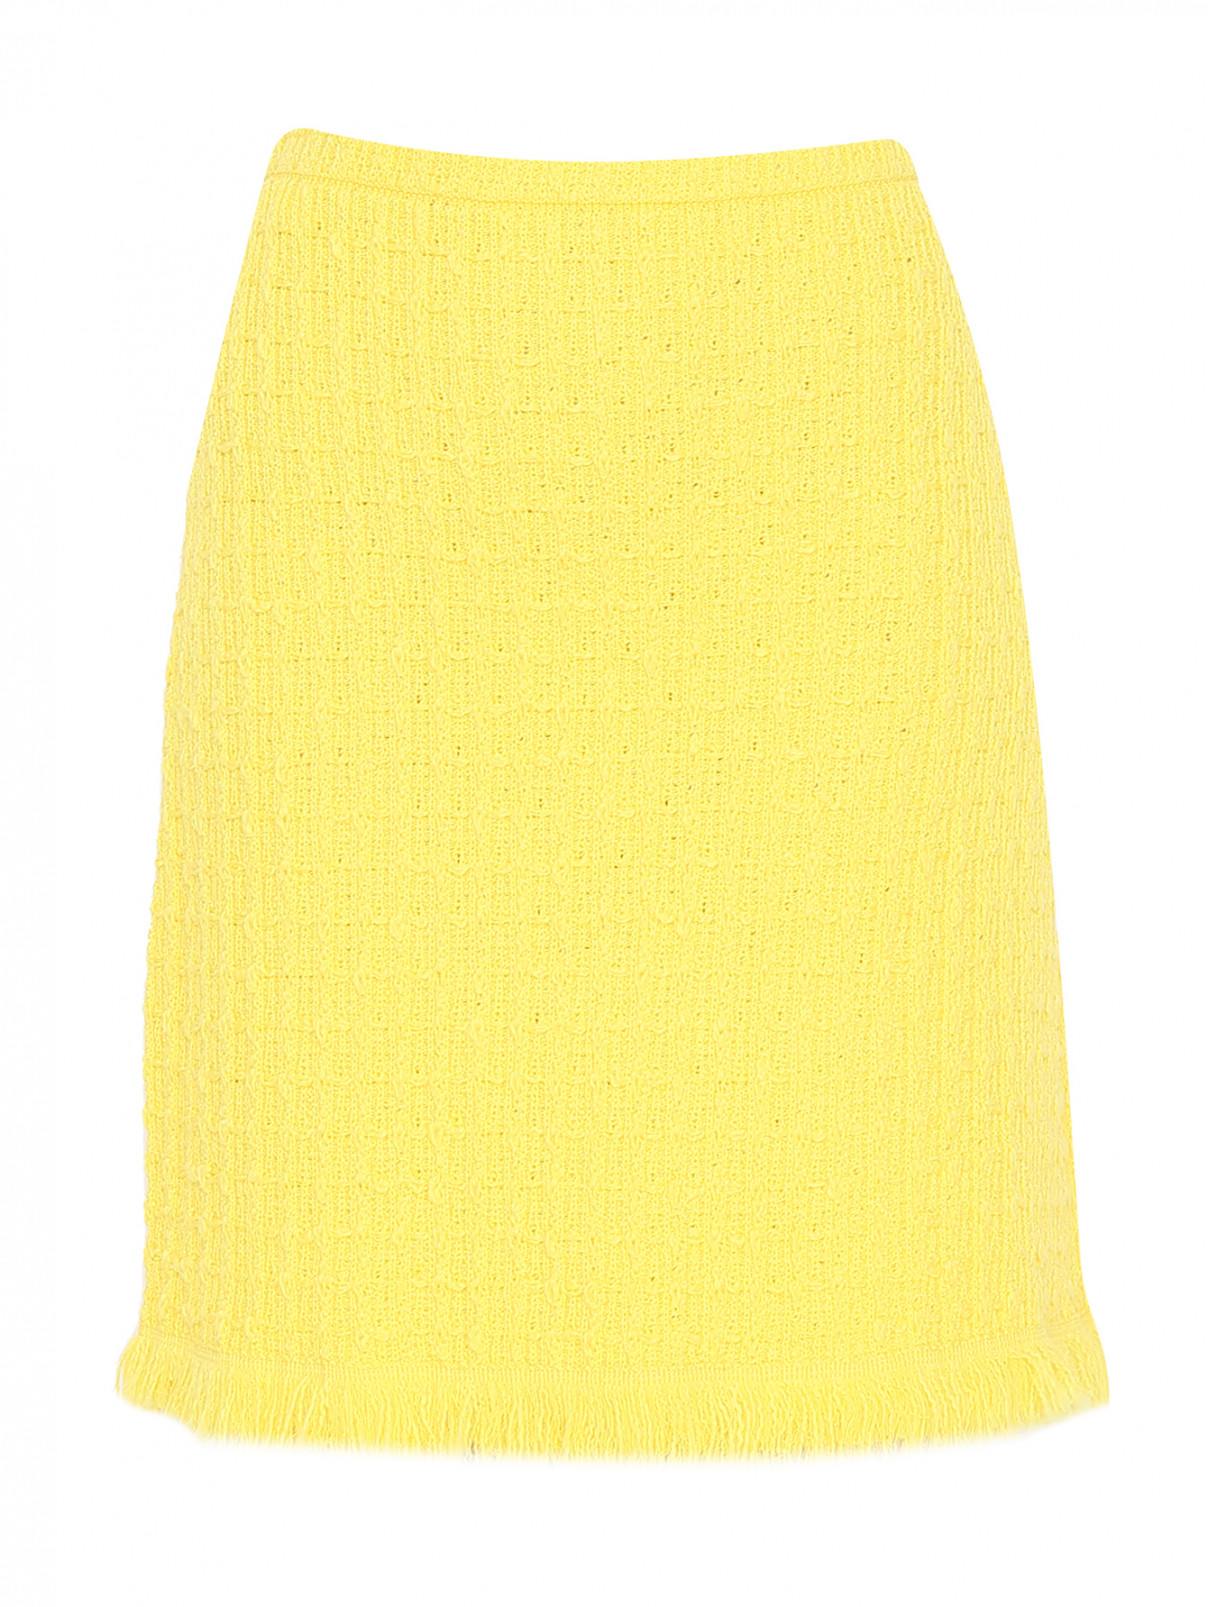 Трикотажная юбка с бахромой Luisa Spagnoli  –  Общий вид  – Цвет:  Желтый